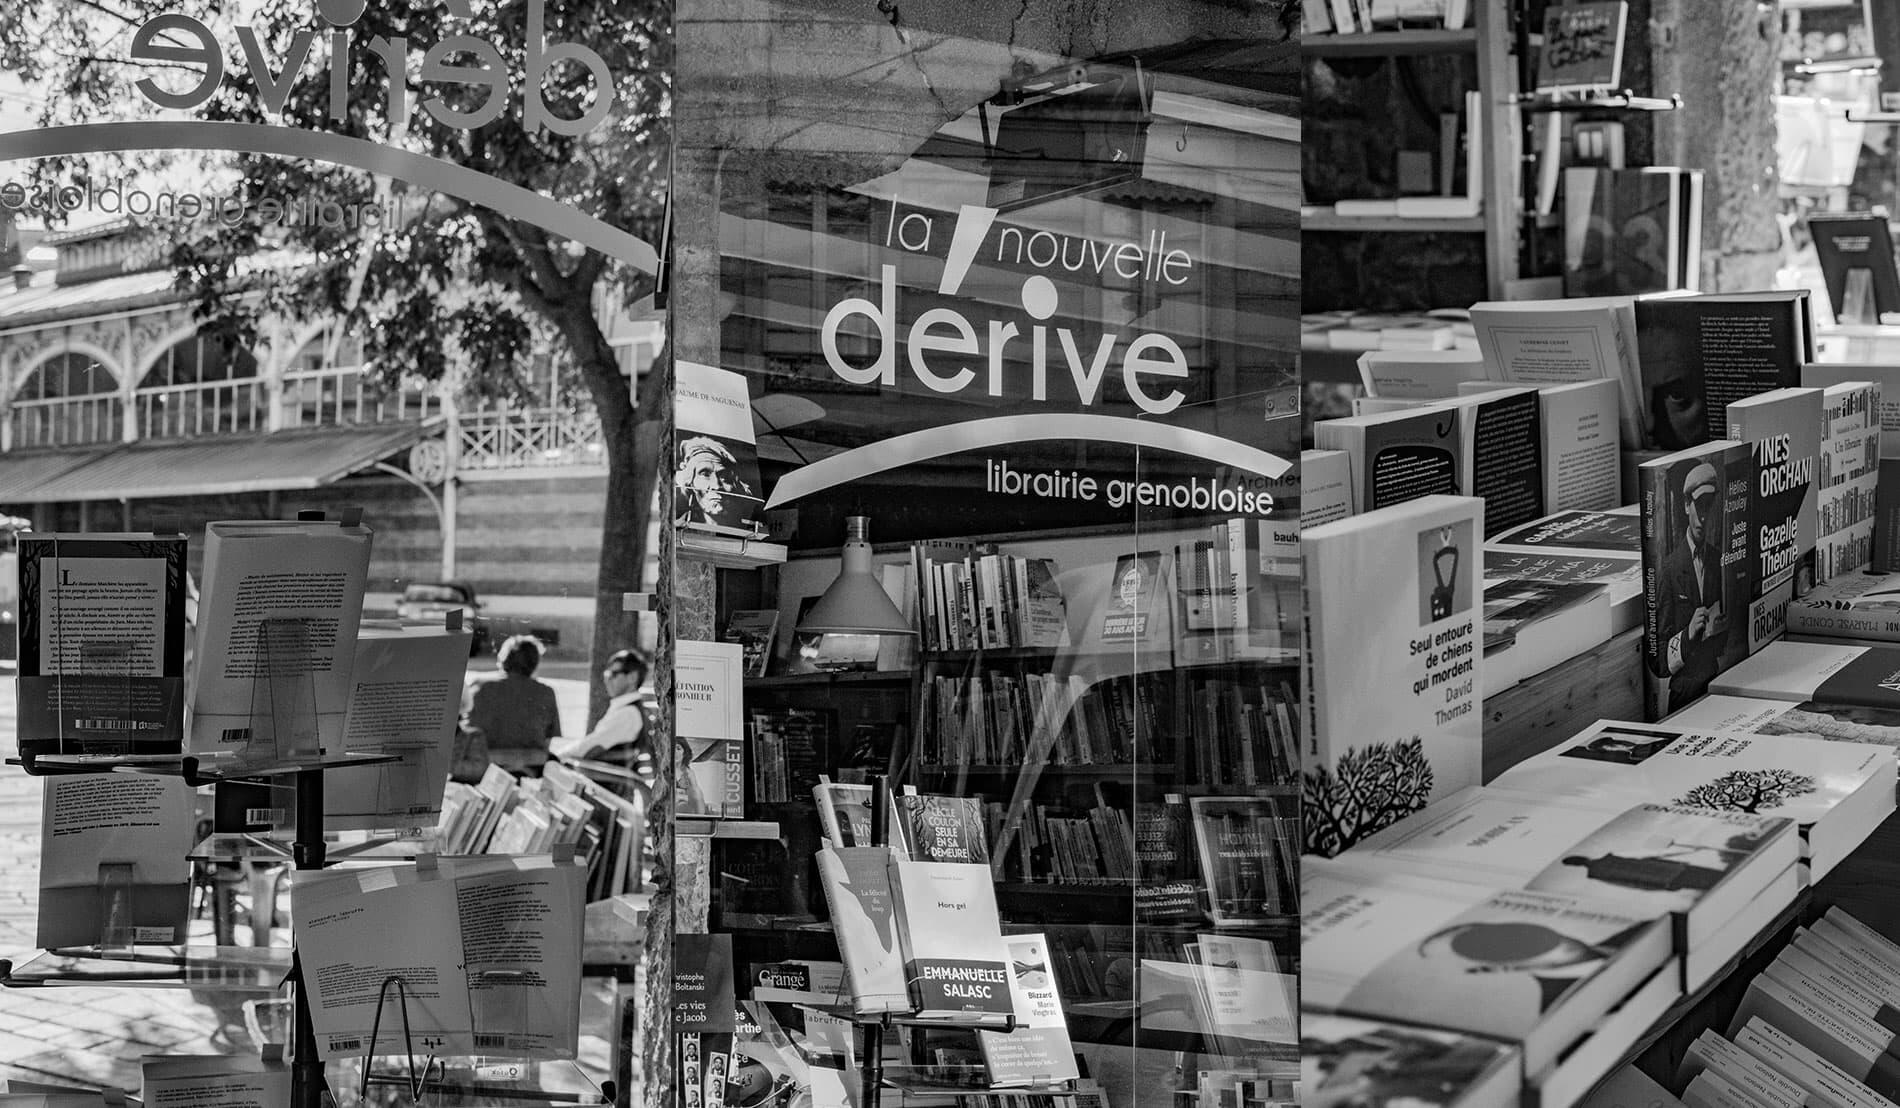 La nouvelle Dérive - Librairie - Grenoble